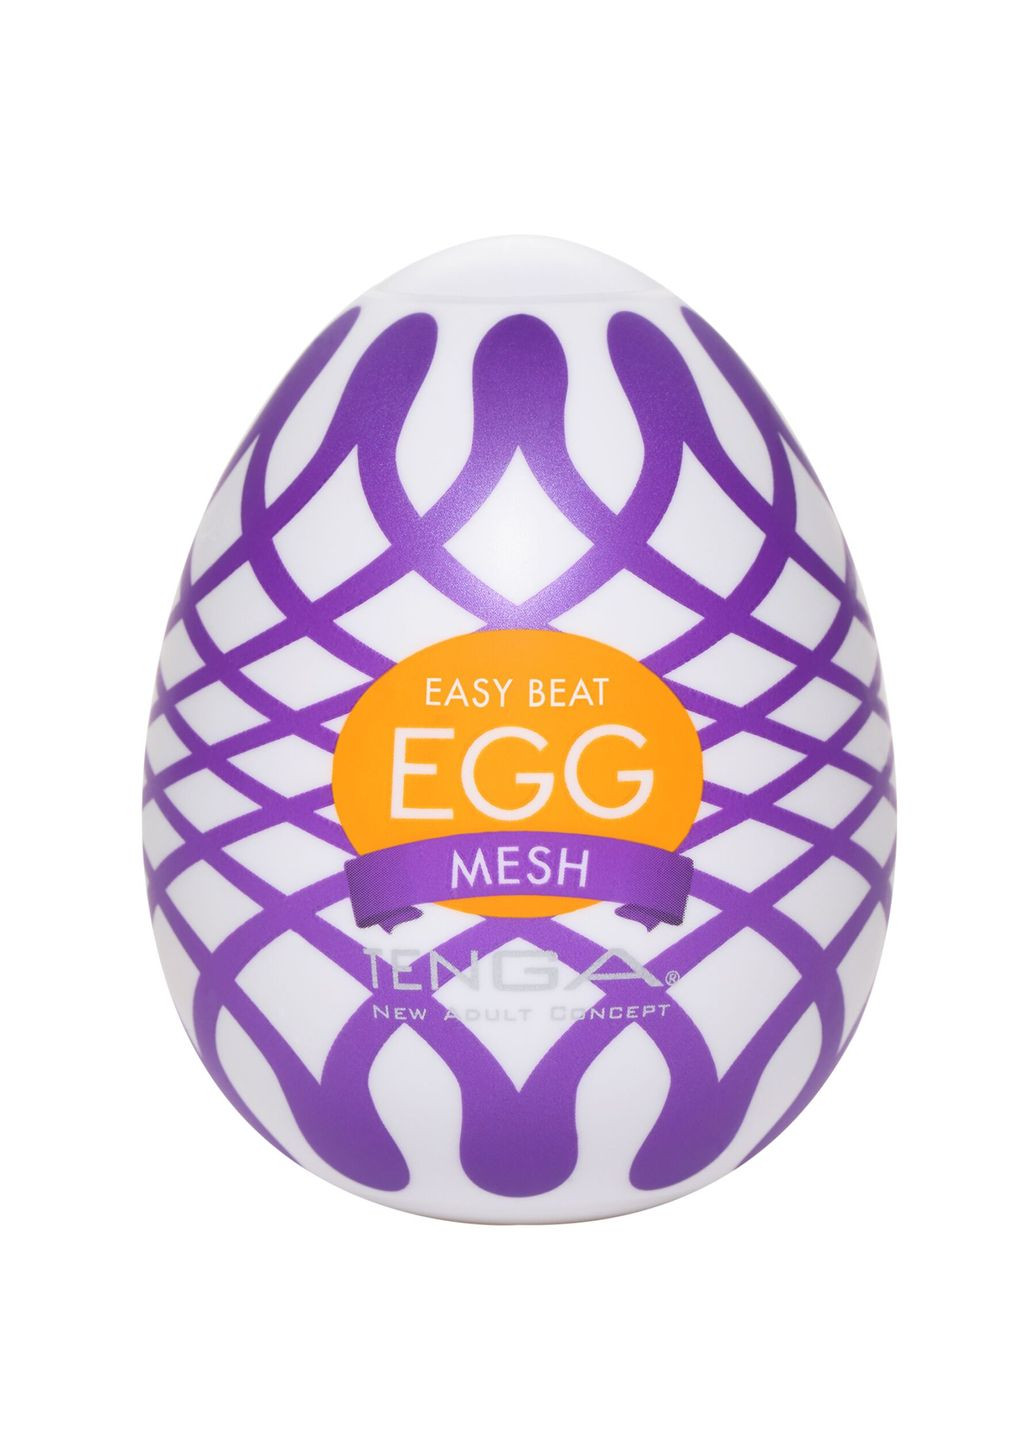 Мастурбатор Egg Mesh с сетчатым рельефом Tenga (291439654)